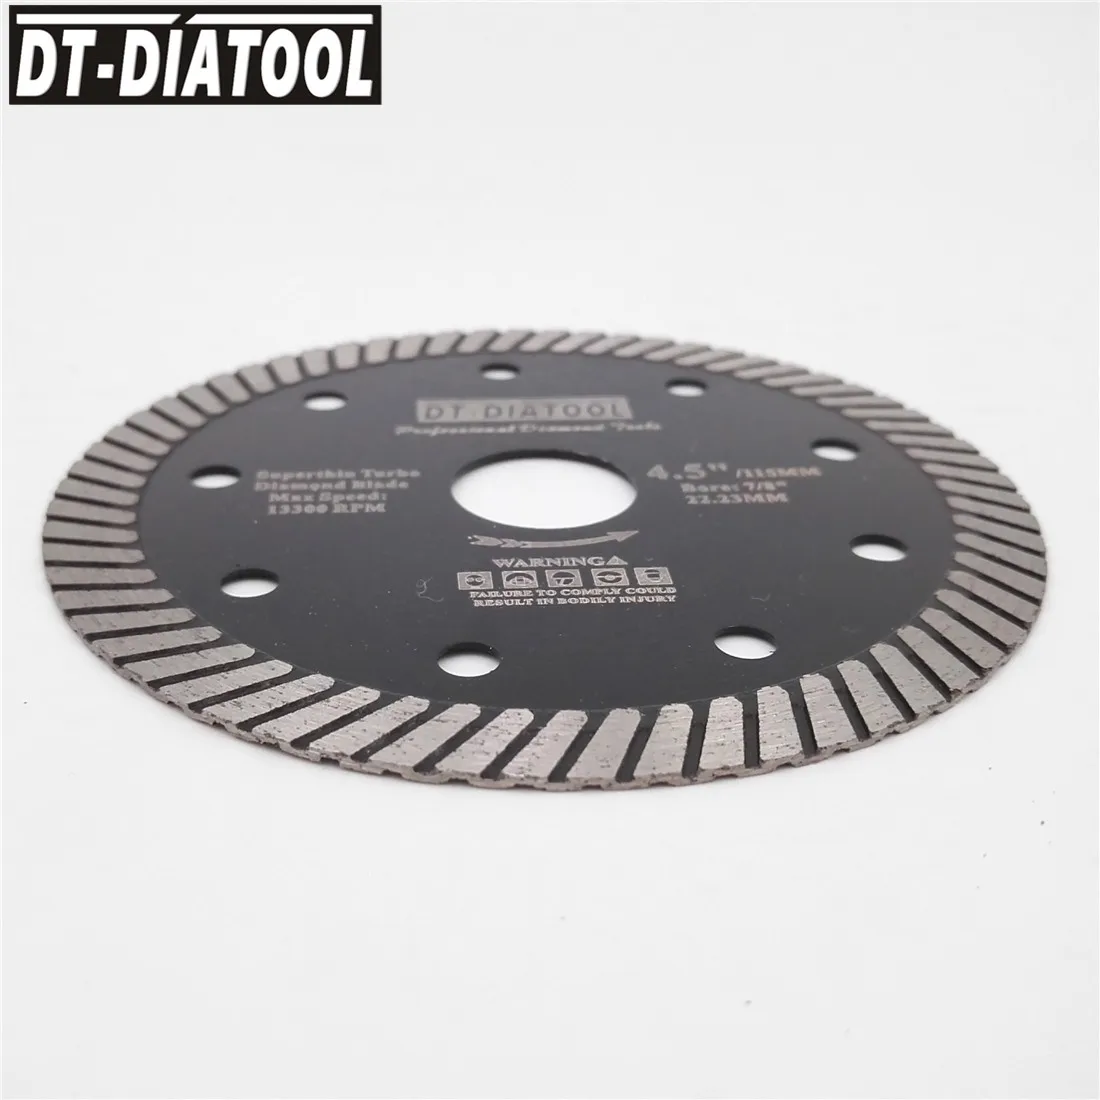 DT-DIATOOL 5 шт. алмазные сверхтонкие режущие диски для плитки, турбо-лезвия для твердого материала, фарфоровой керамической плитки, диаметр 115 мм... от AliExpress RU&CIS NEW